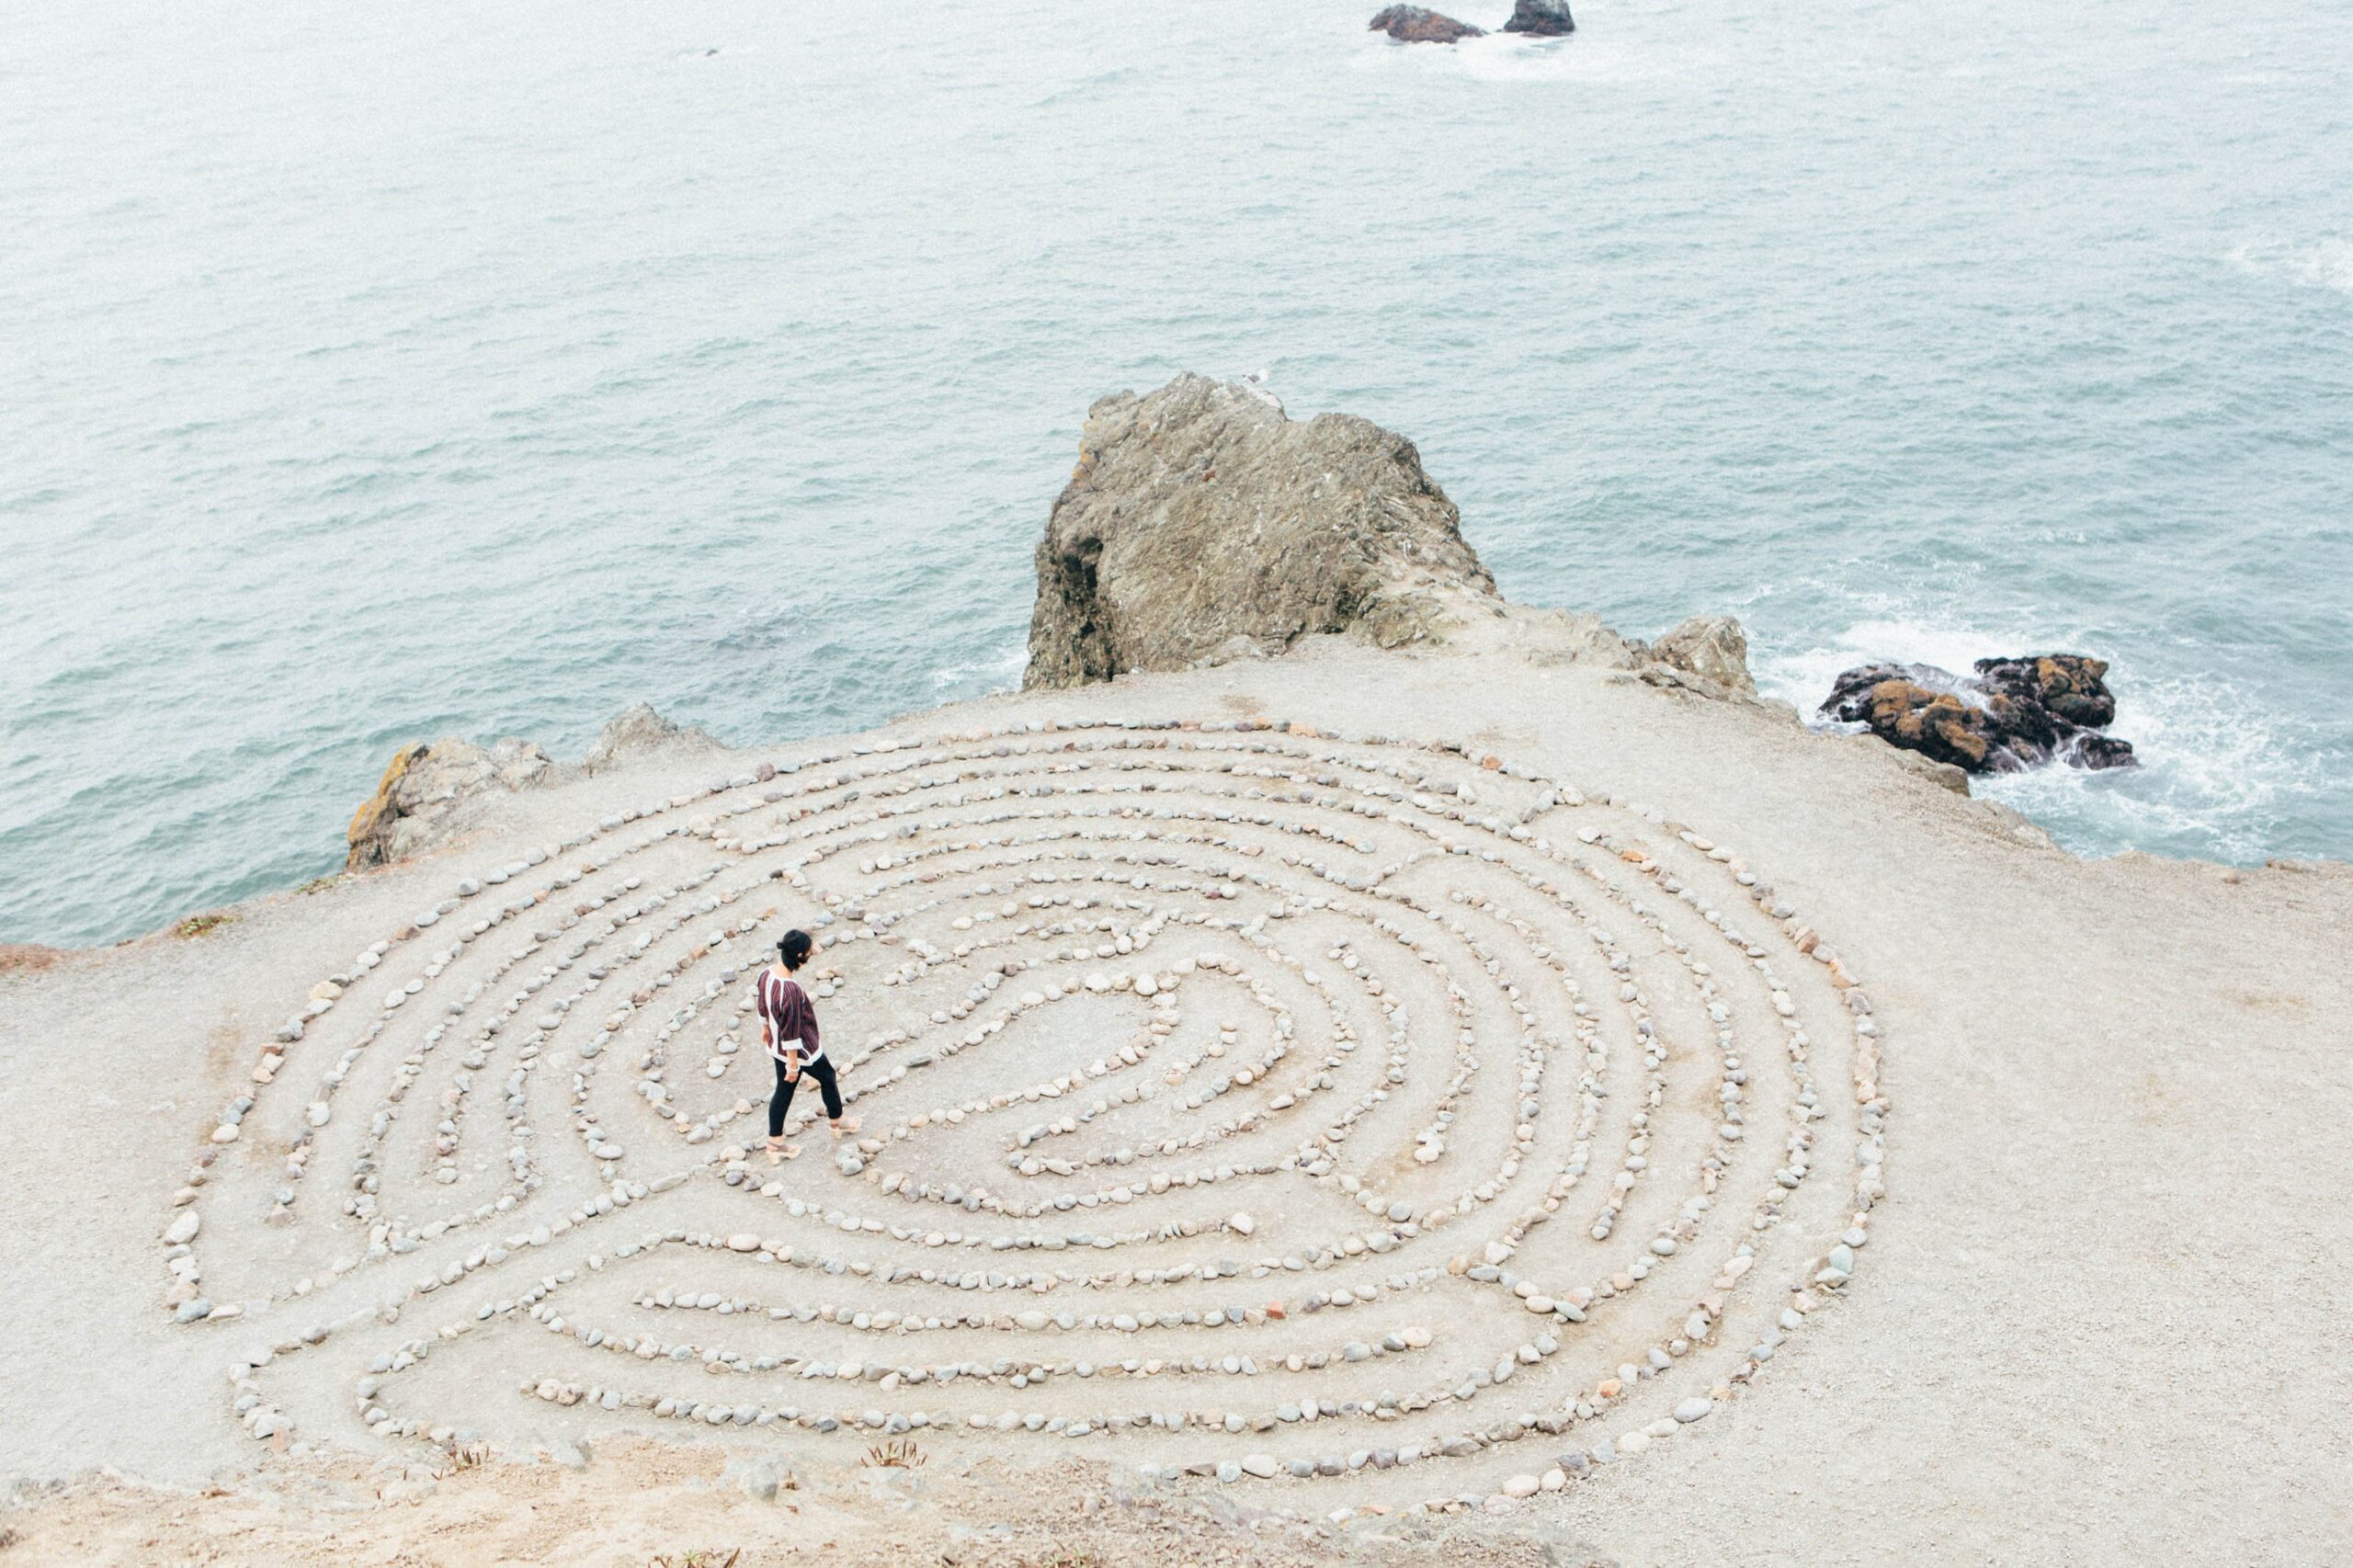 labyrinth on the beach by Ashley Batz on Unsplash.